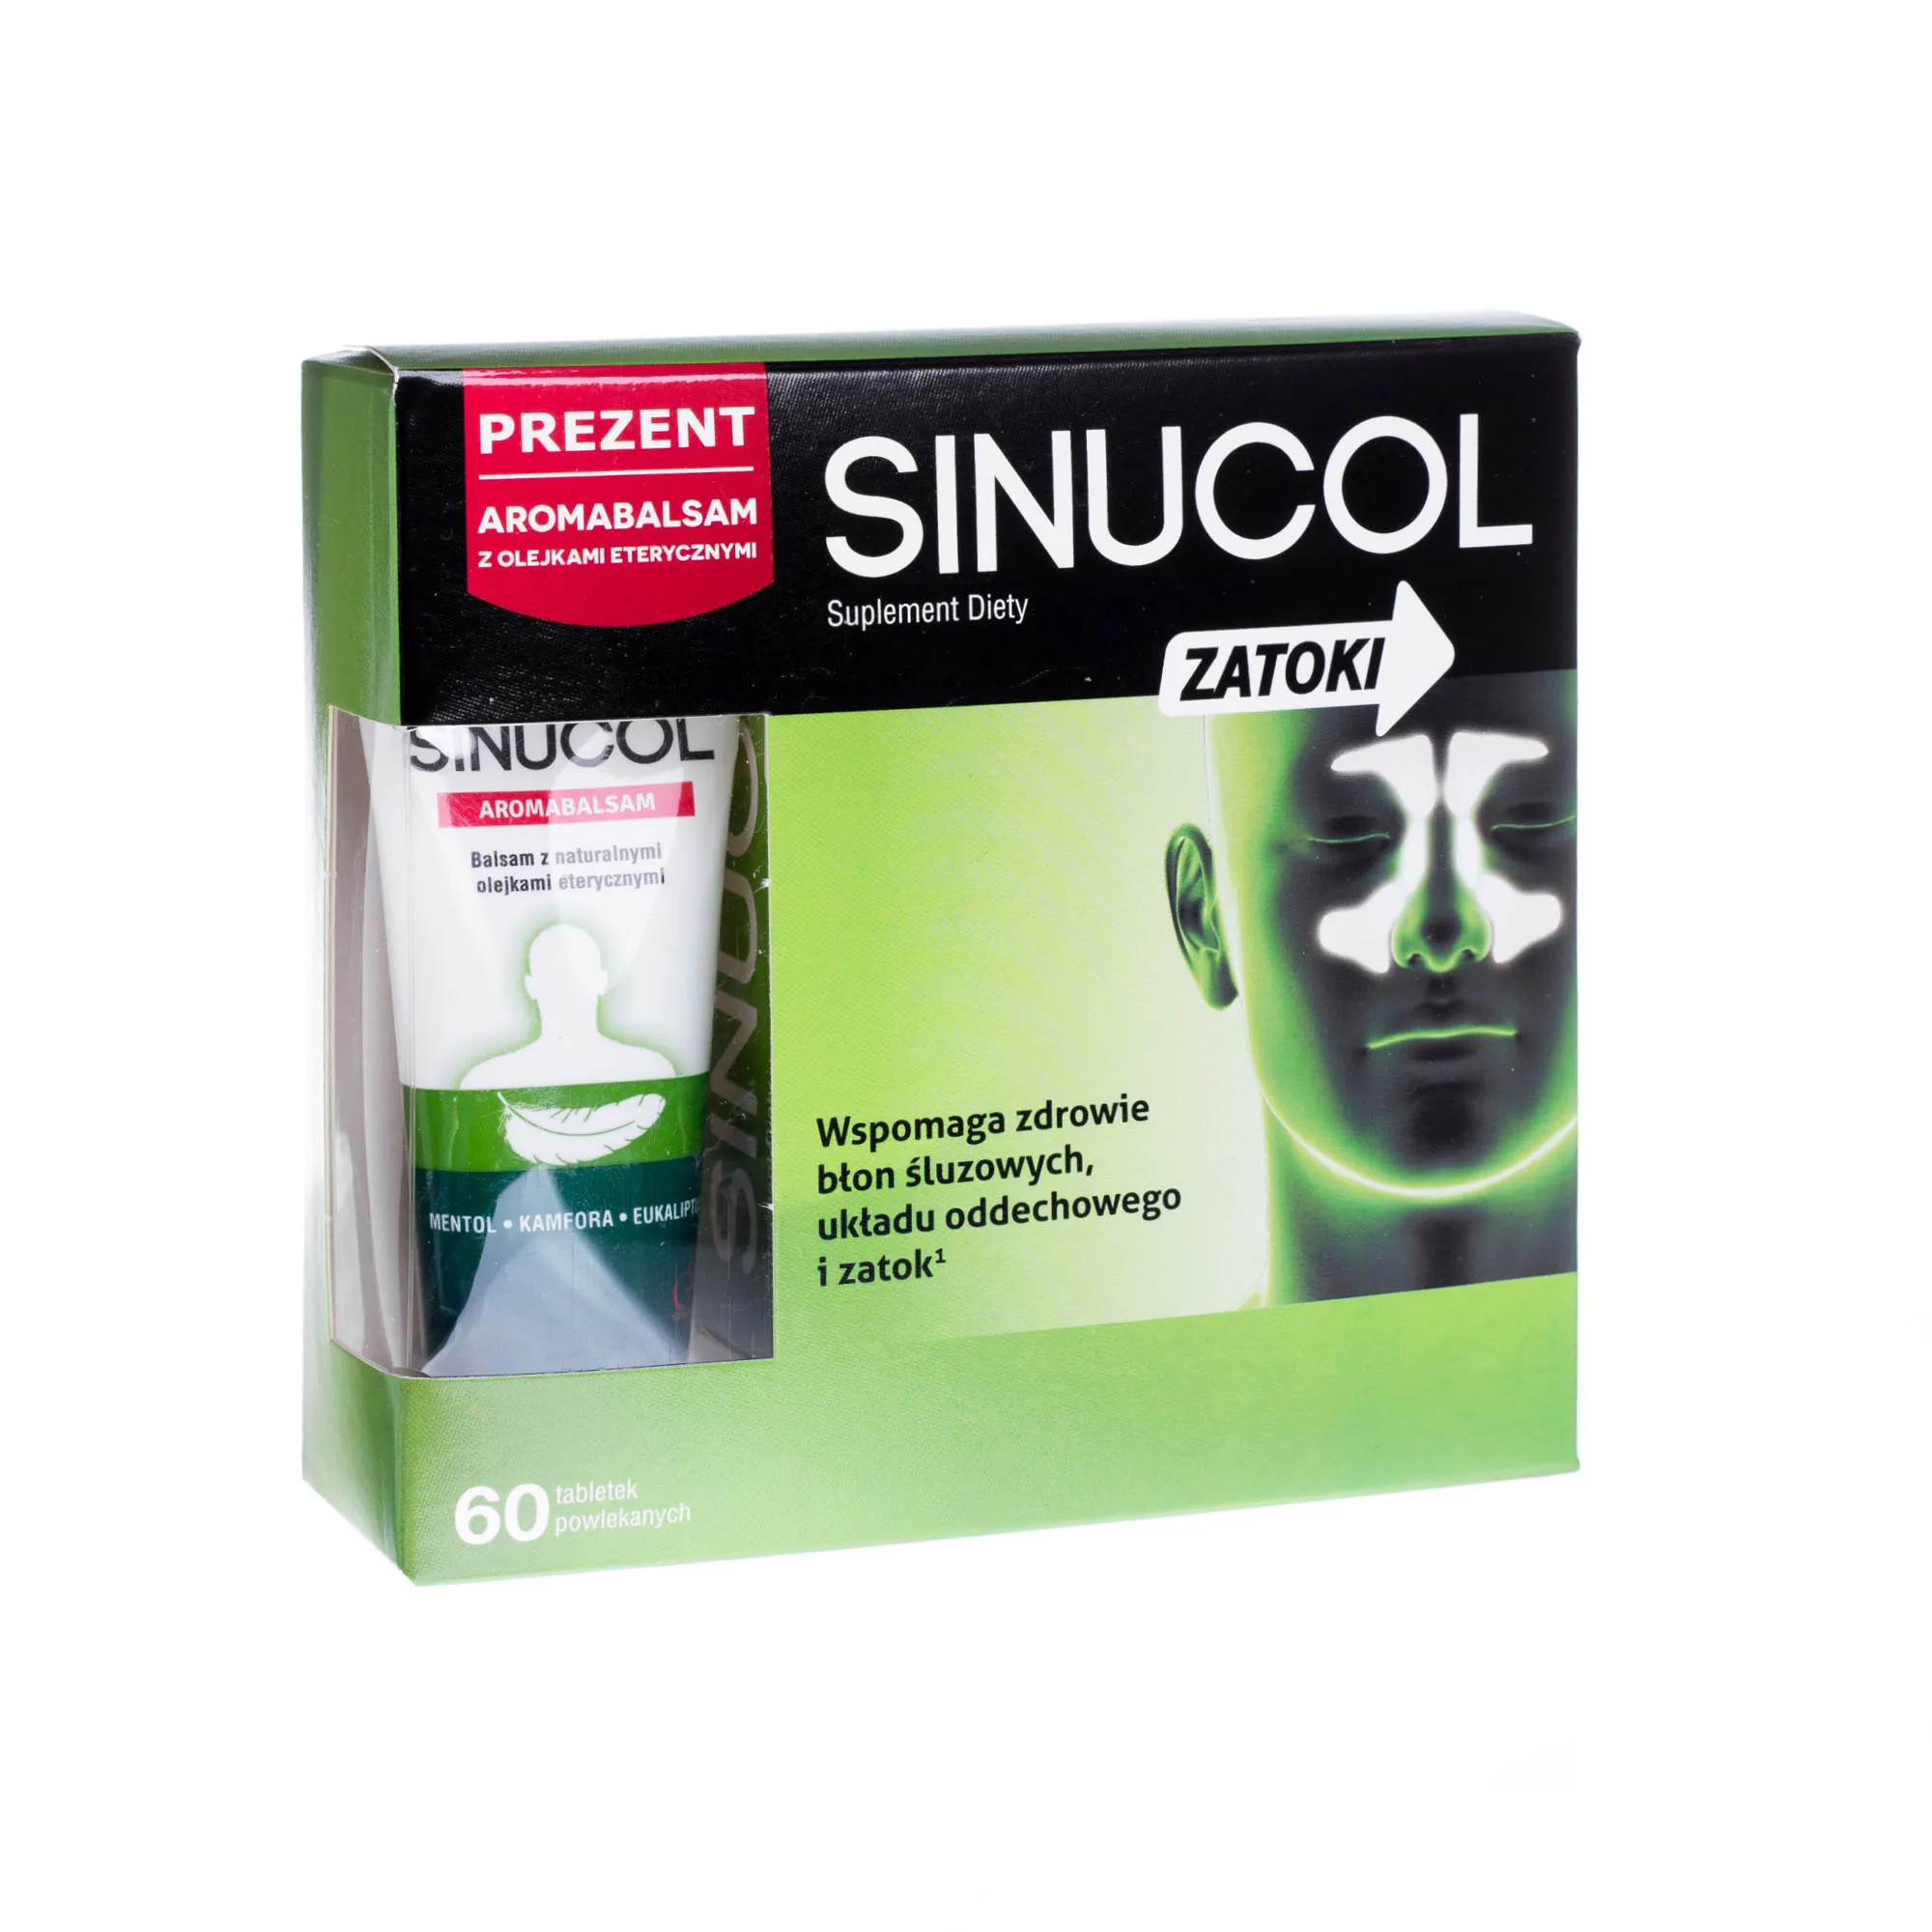 Sinucol Zatoki, suplement diety, 60 tabletek + Sinucol Aromabalsam gratis